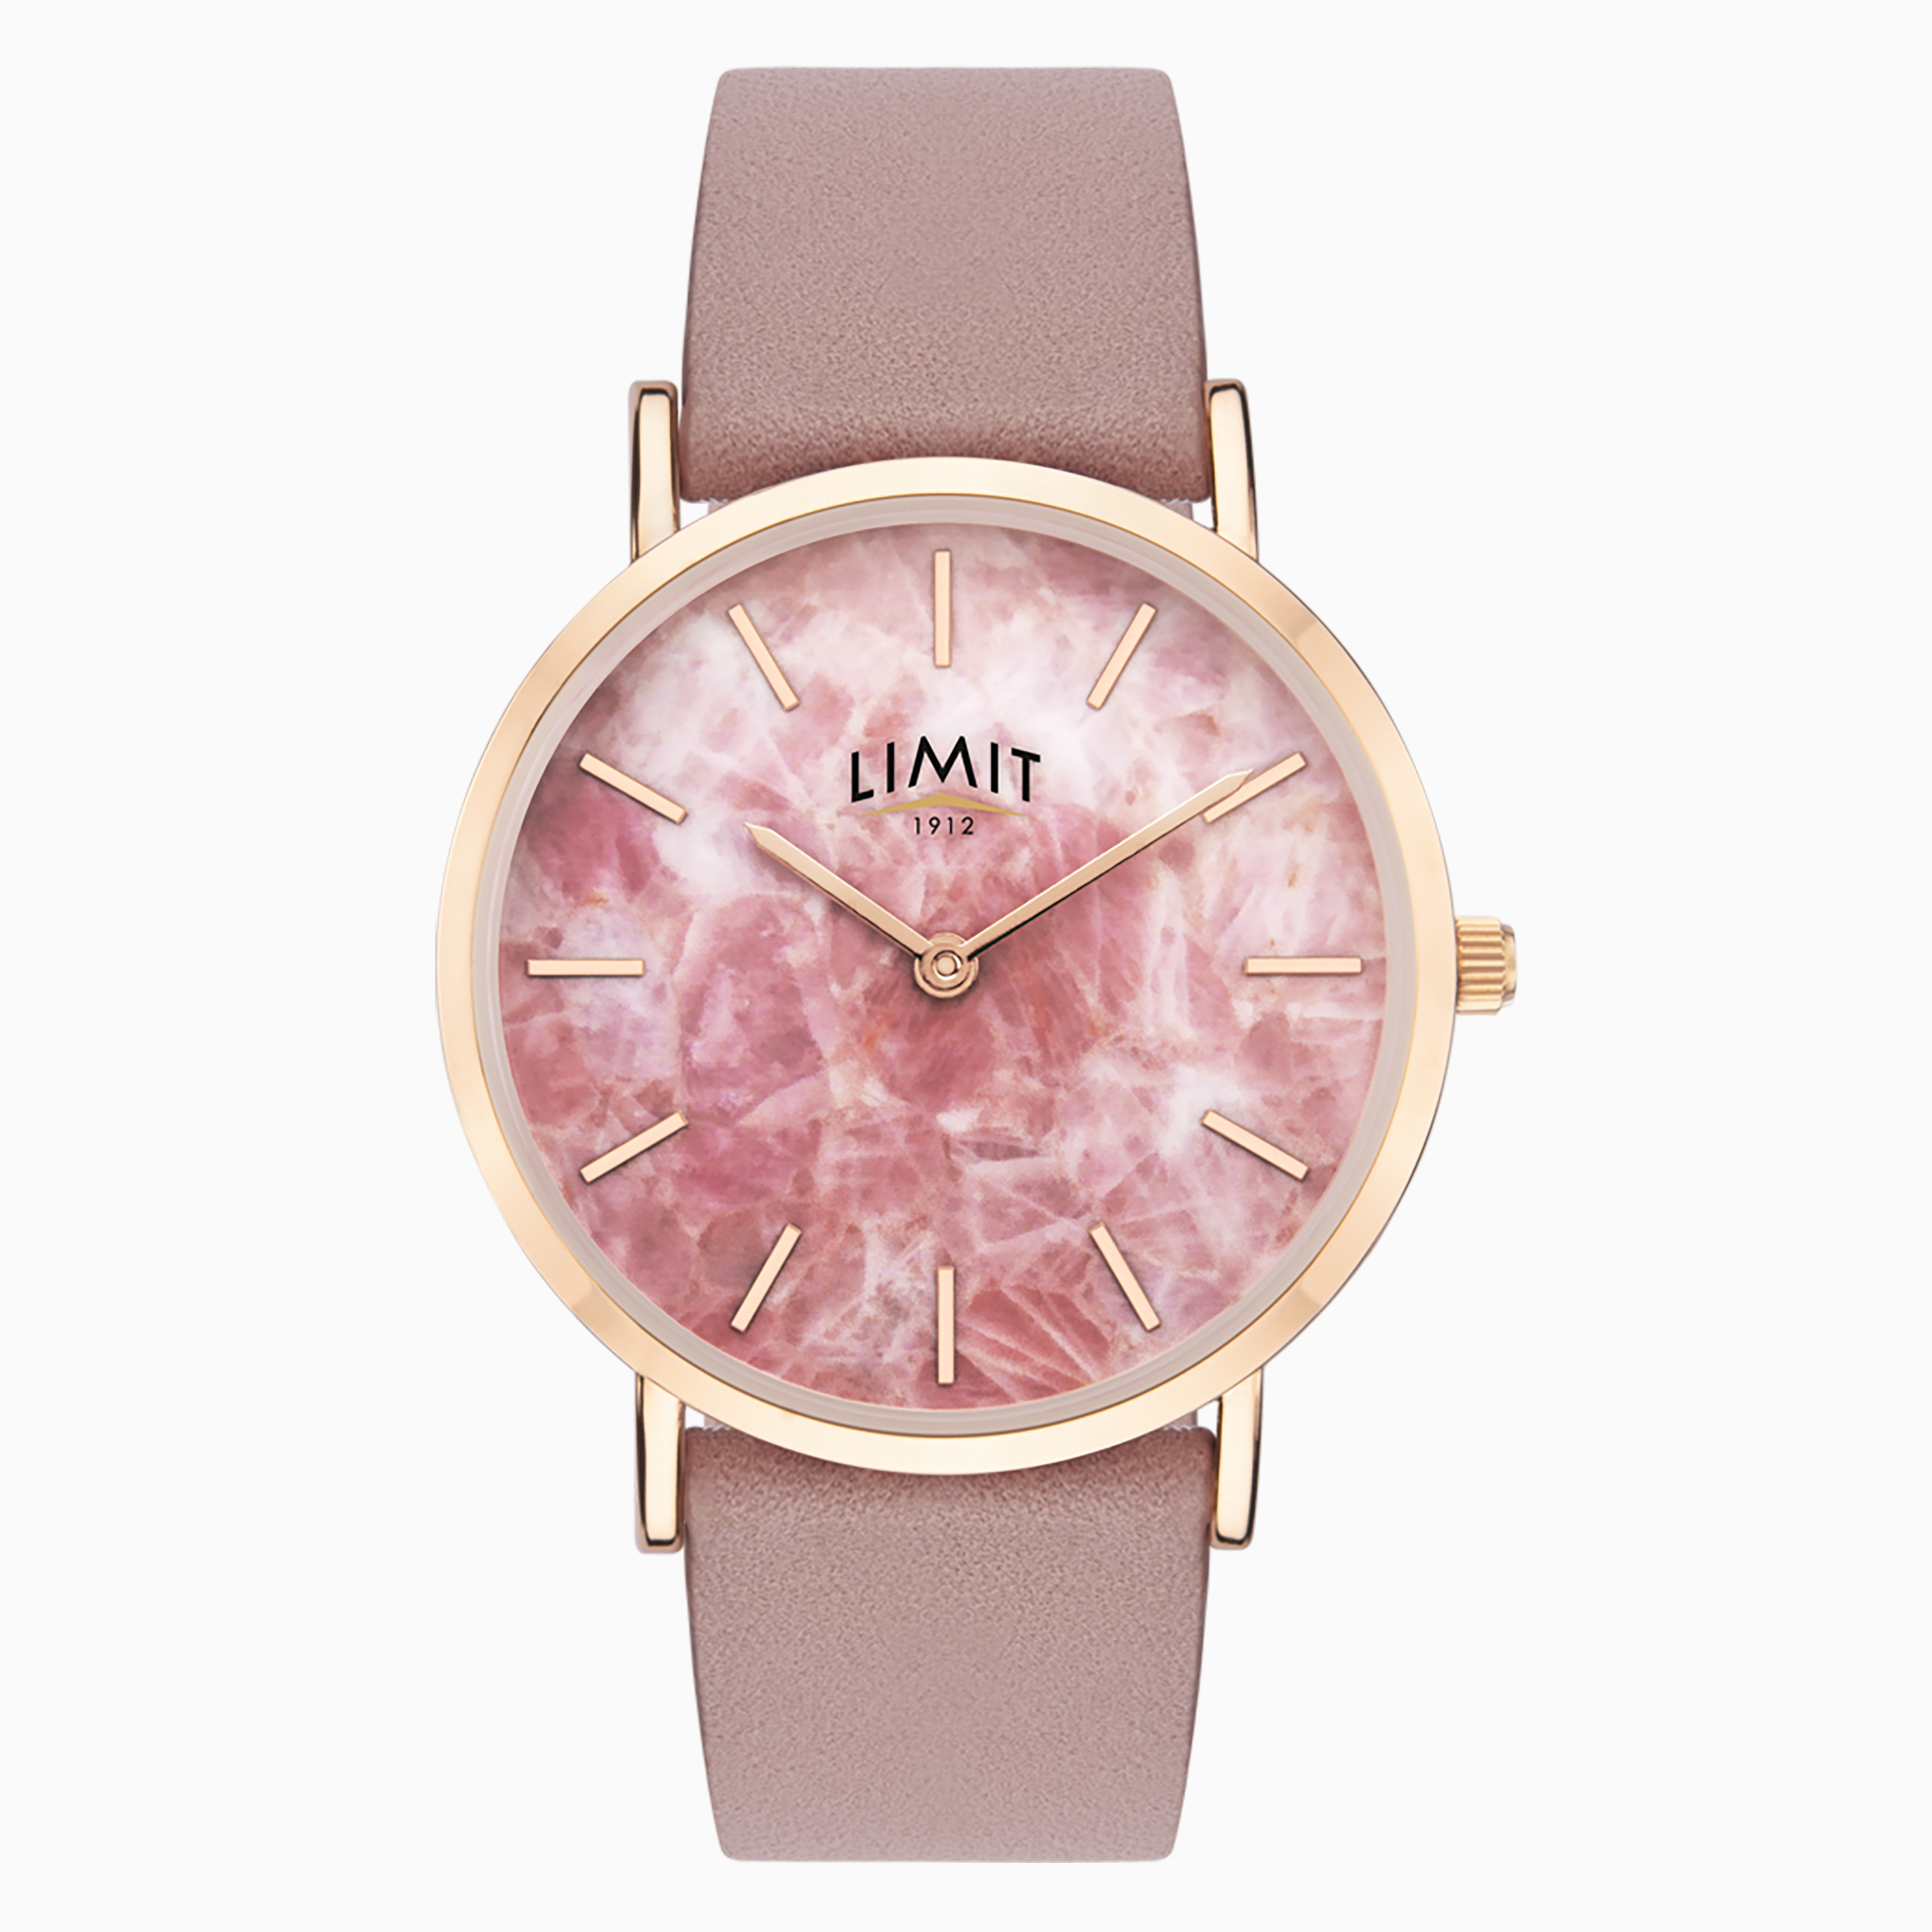 Limit Ladies Fashion Watch (60014) - Round, 35mm